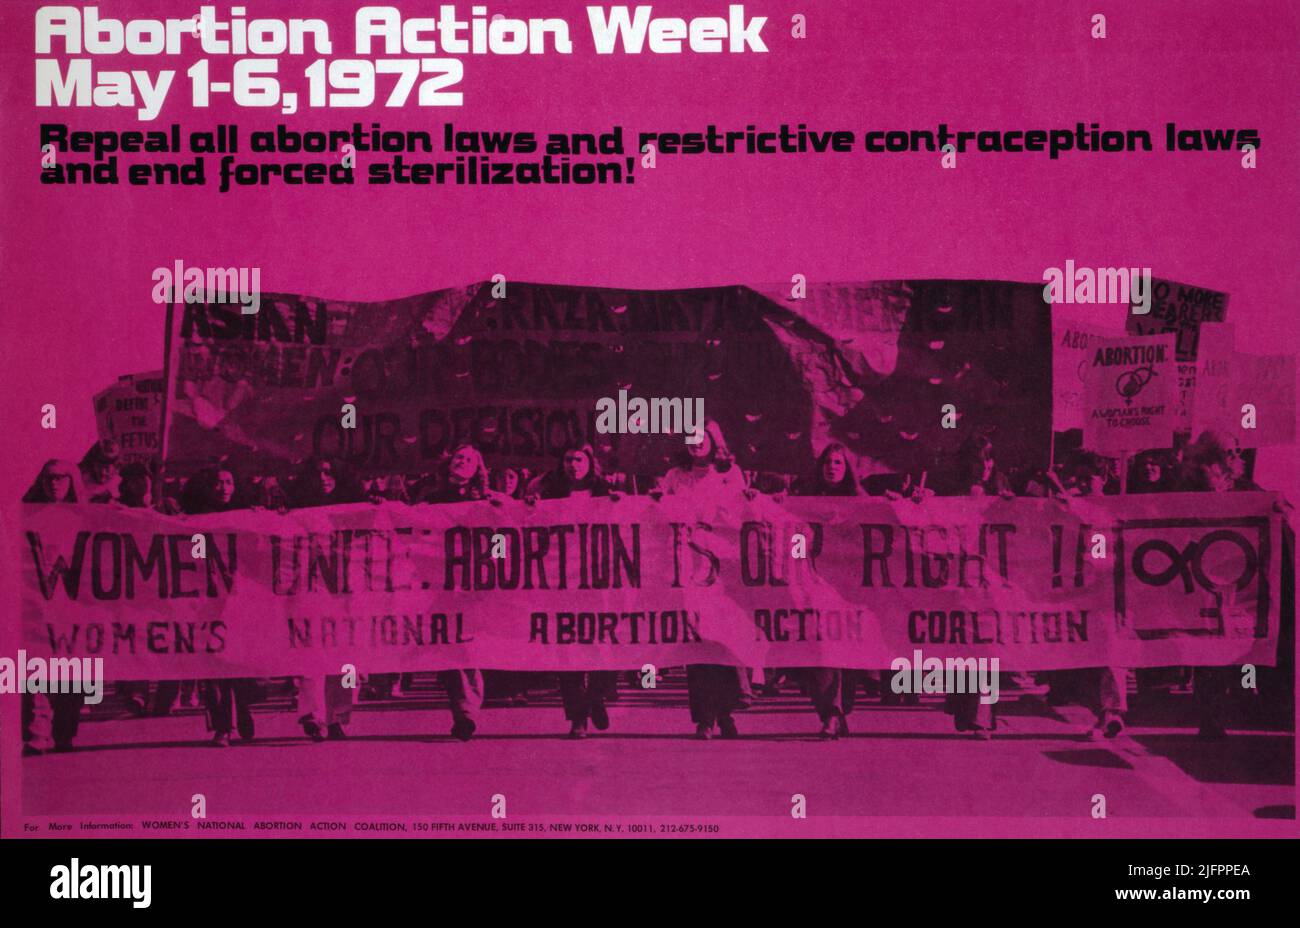 Plakat für die Koalition der Nationalen Abtreibungsaktion der Frauen, 1972 Stockfoto